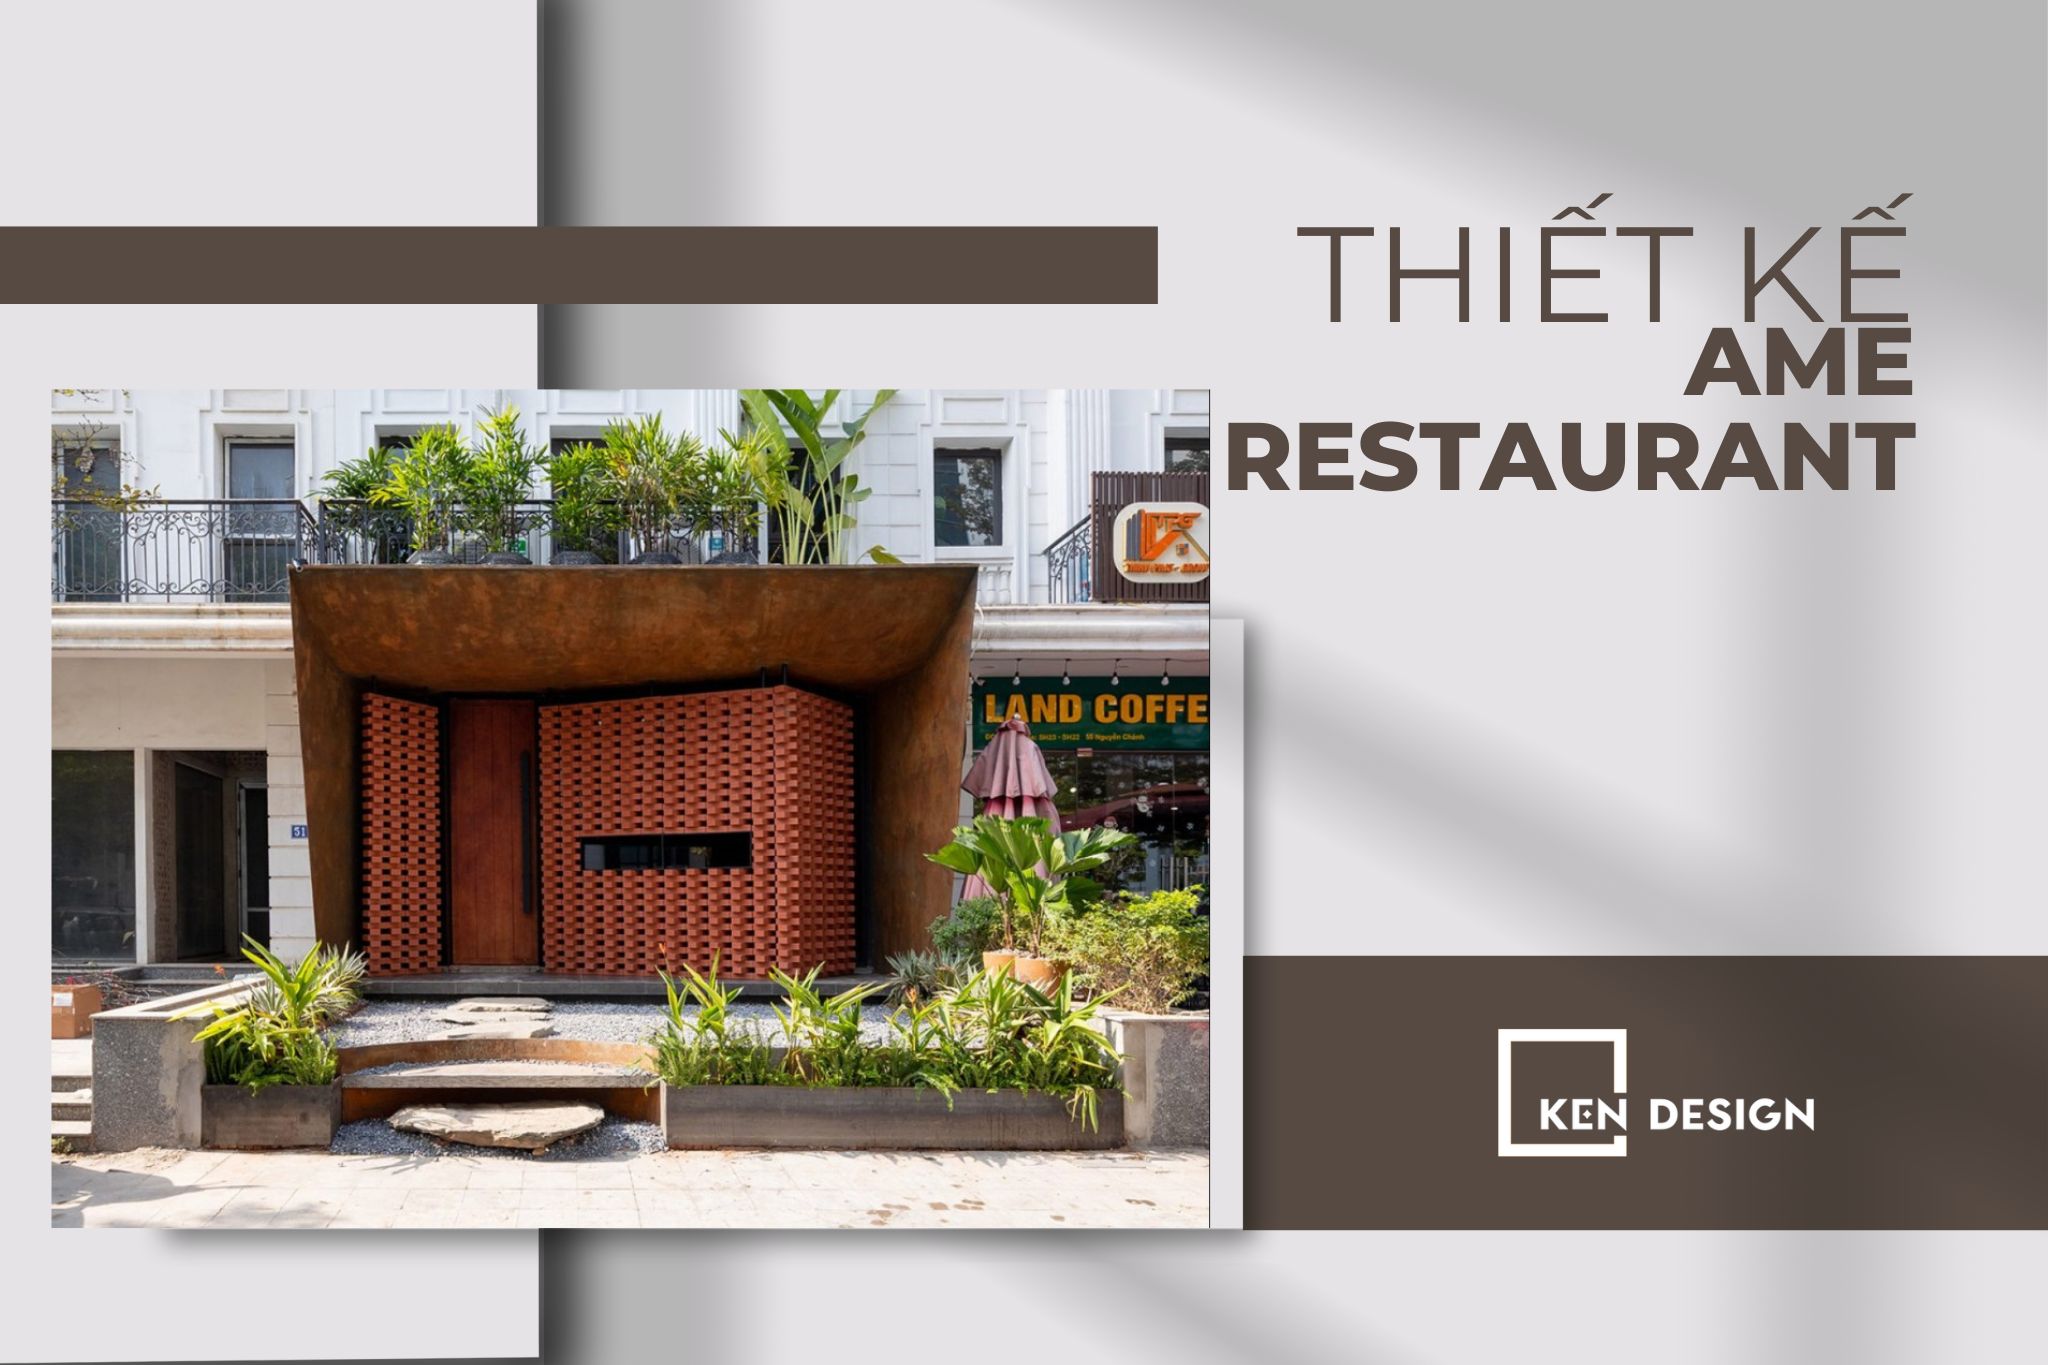 Thiết kế Âme Restaurant – Không gian thiết kế độc đáo lấy ý tưởng từ kiến trúc Thái Lan